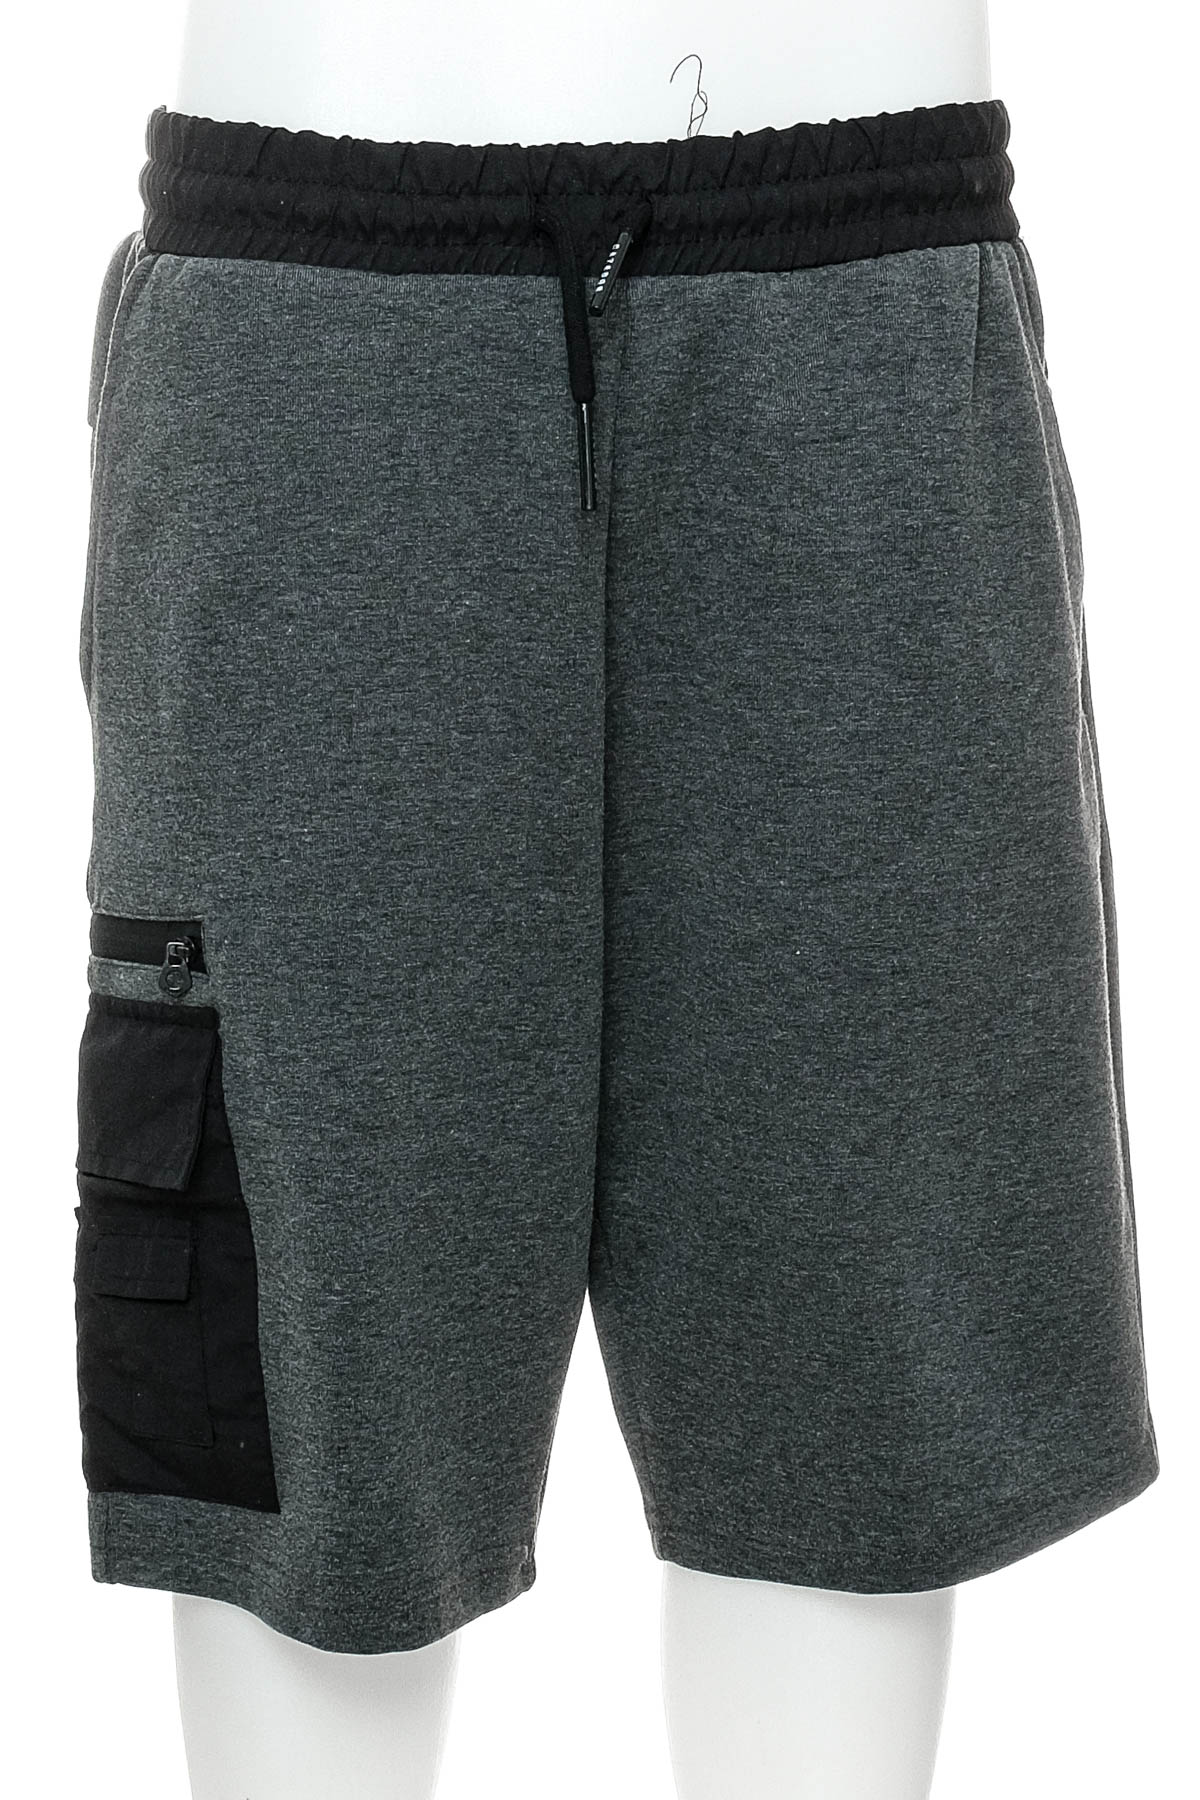 Men's shorts - CAZADOR - 0